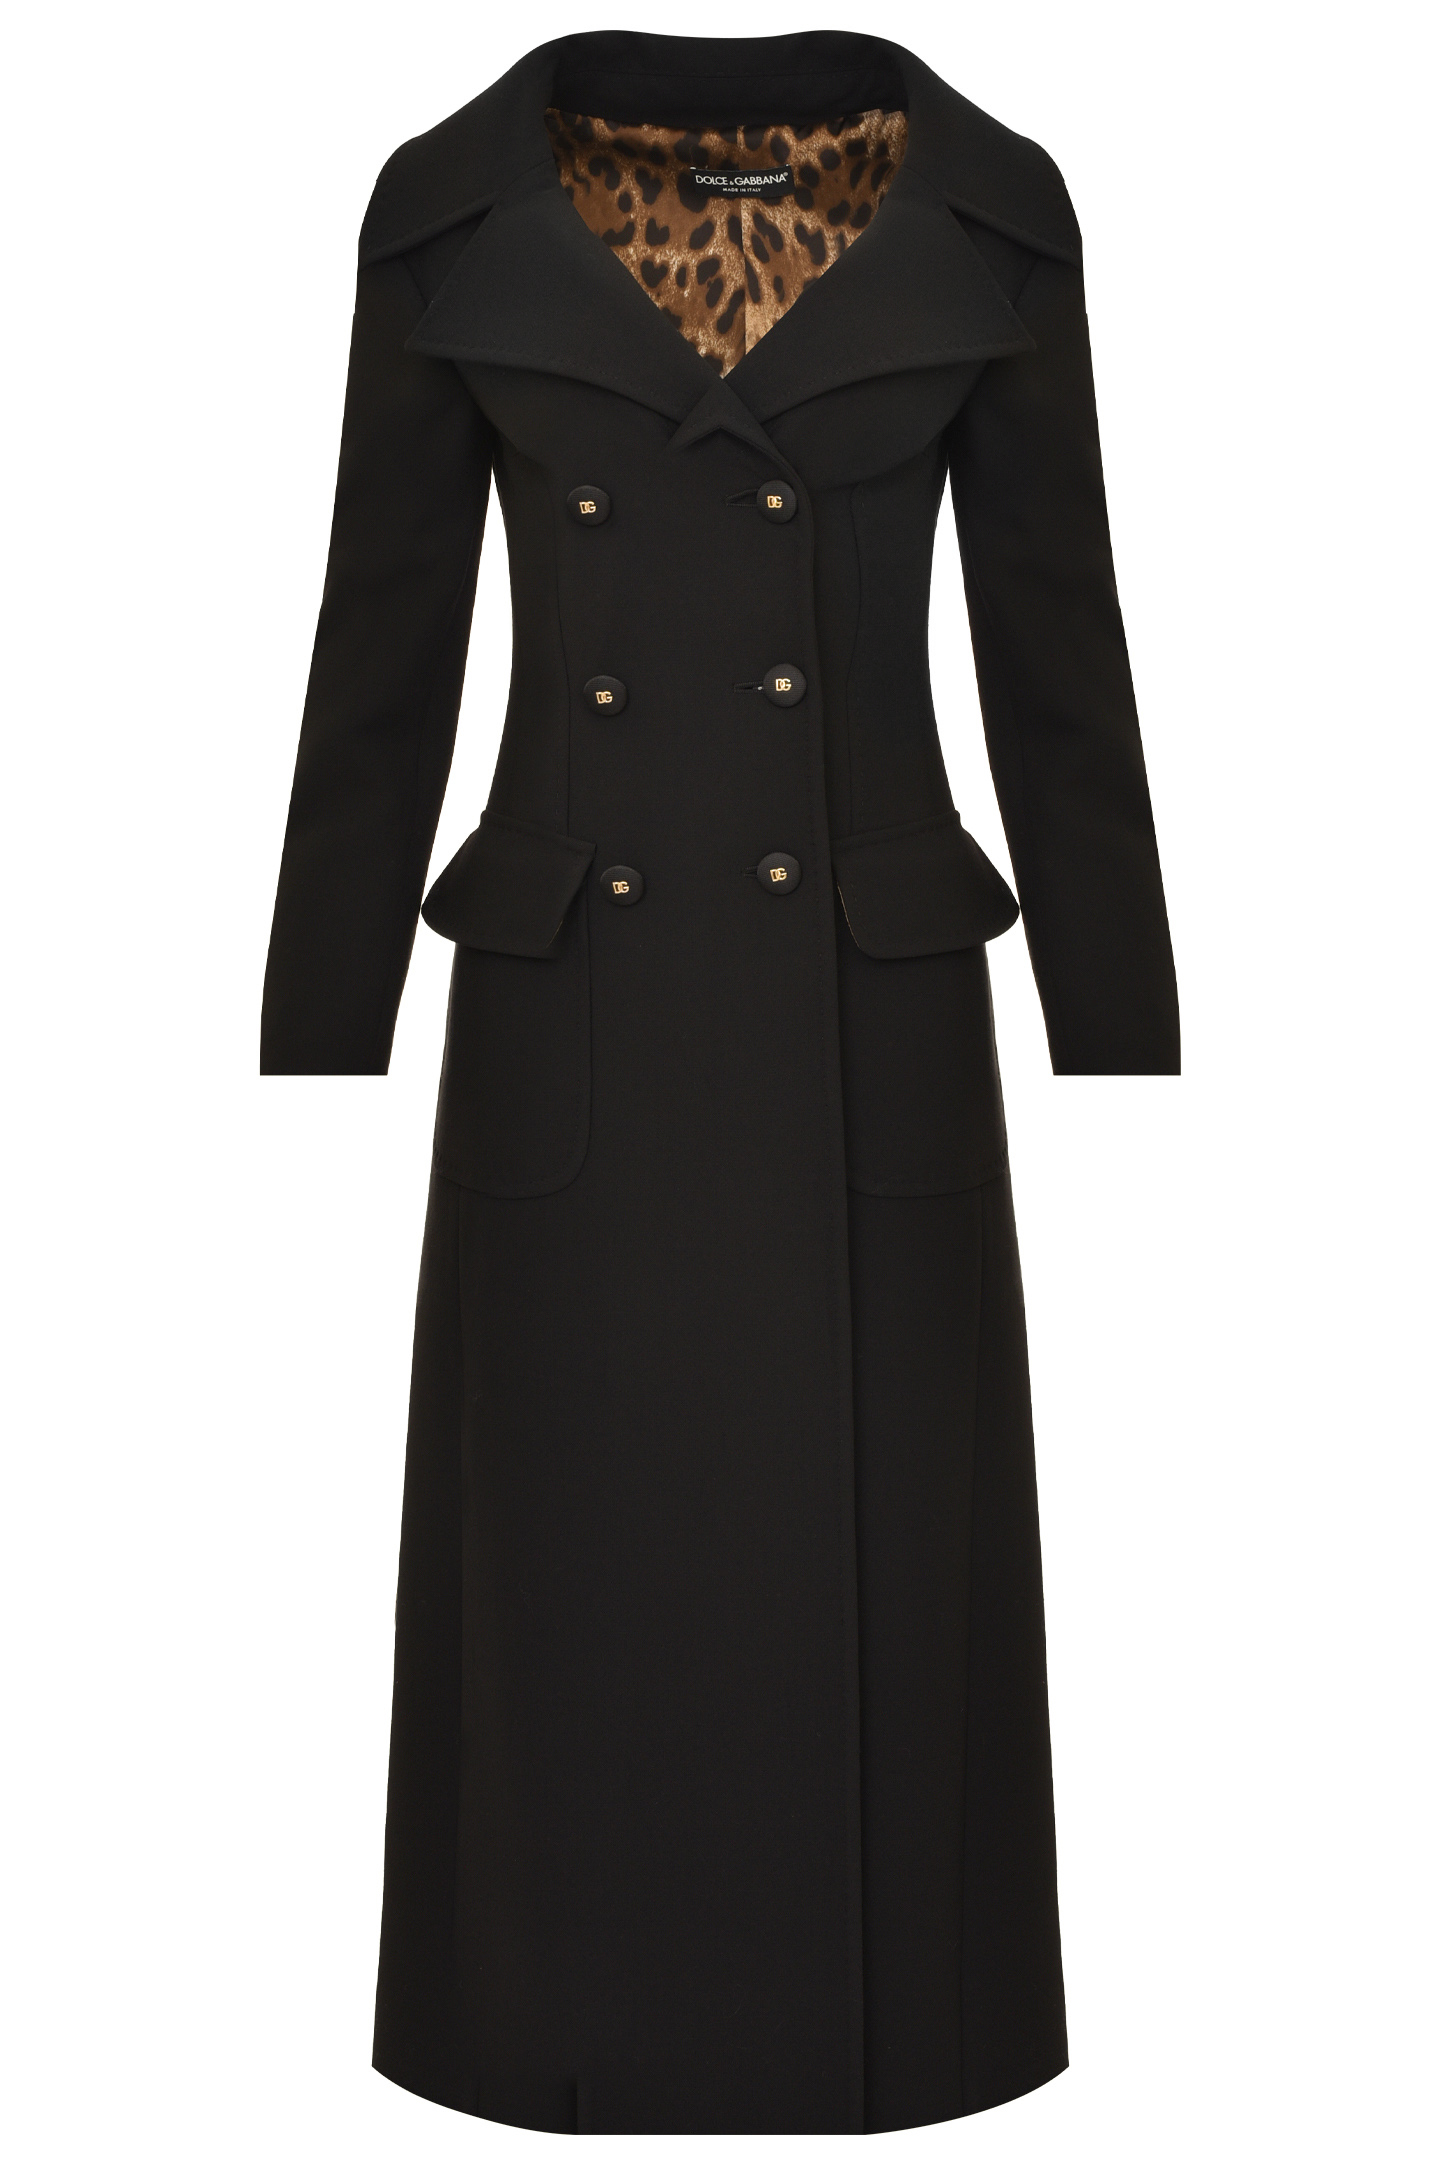 Пальто DOLCE & GABBANA F0AR3T FU2NX, цвет: Черный, Женский